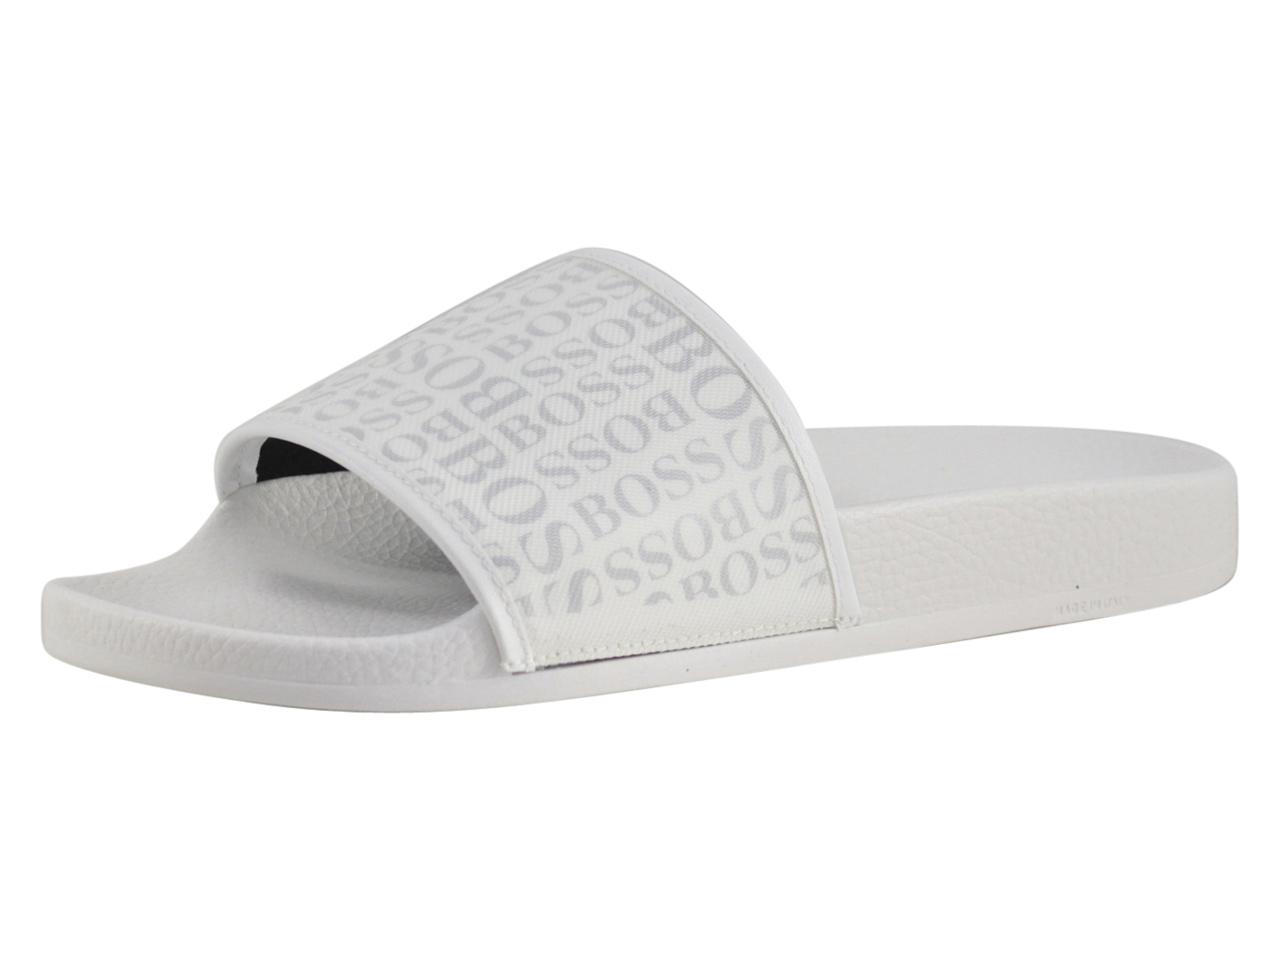 white slides sandals